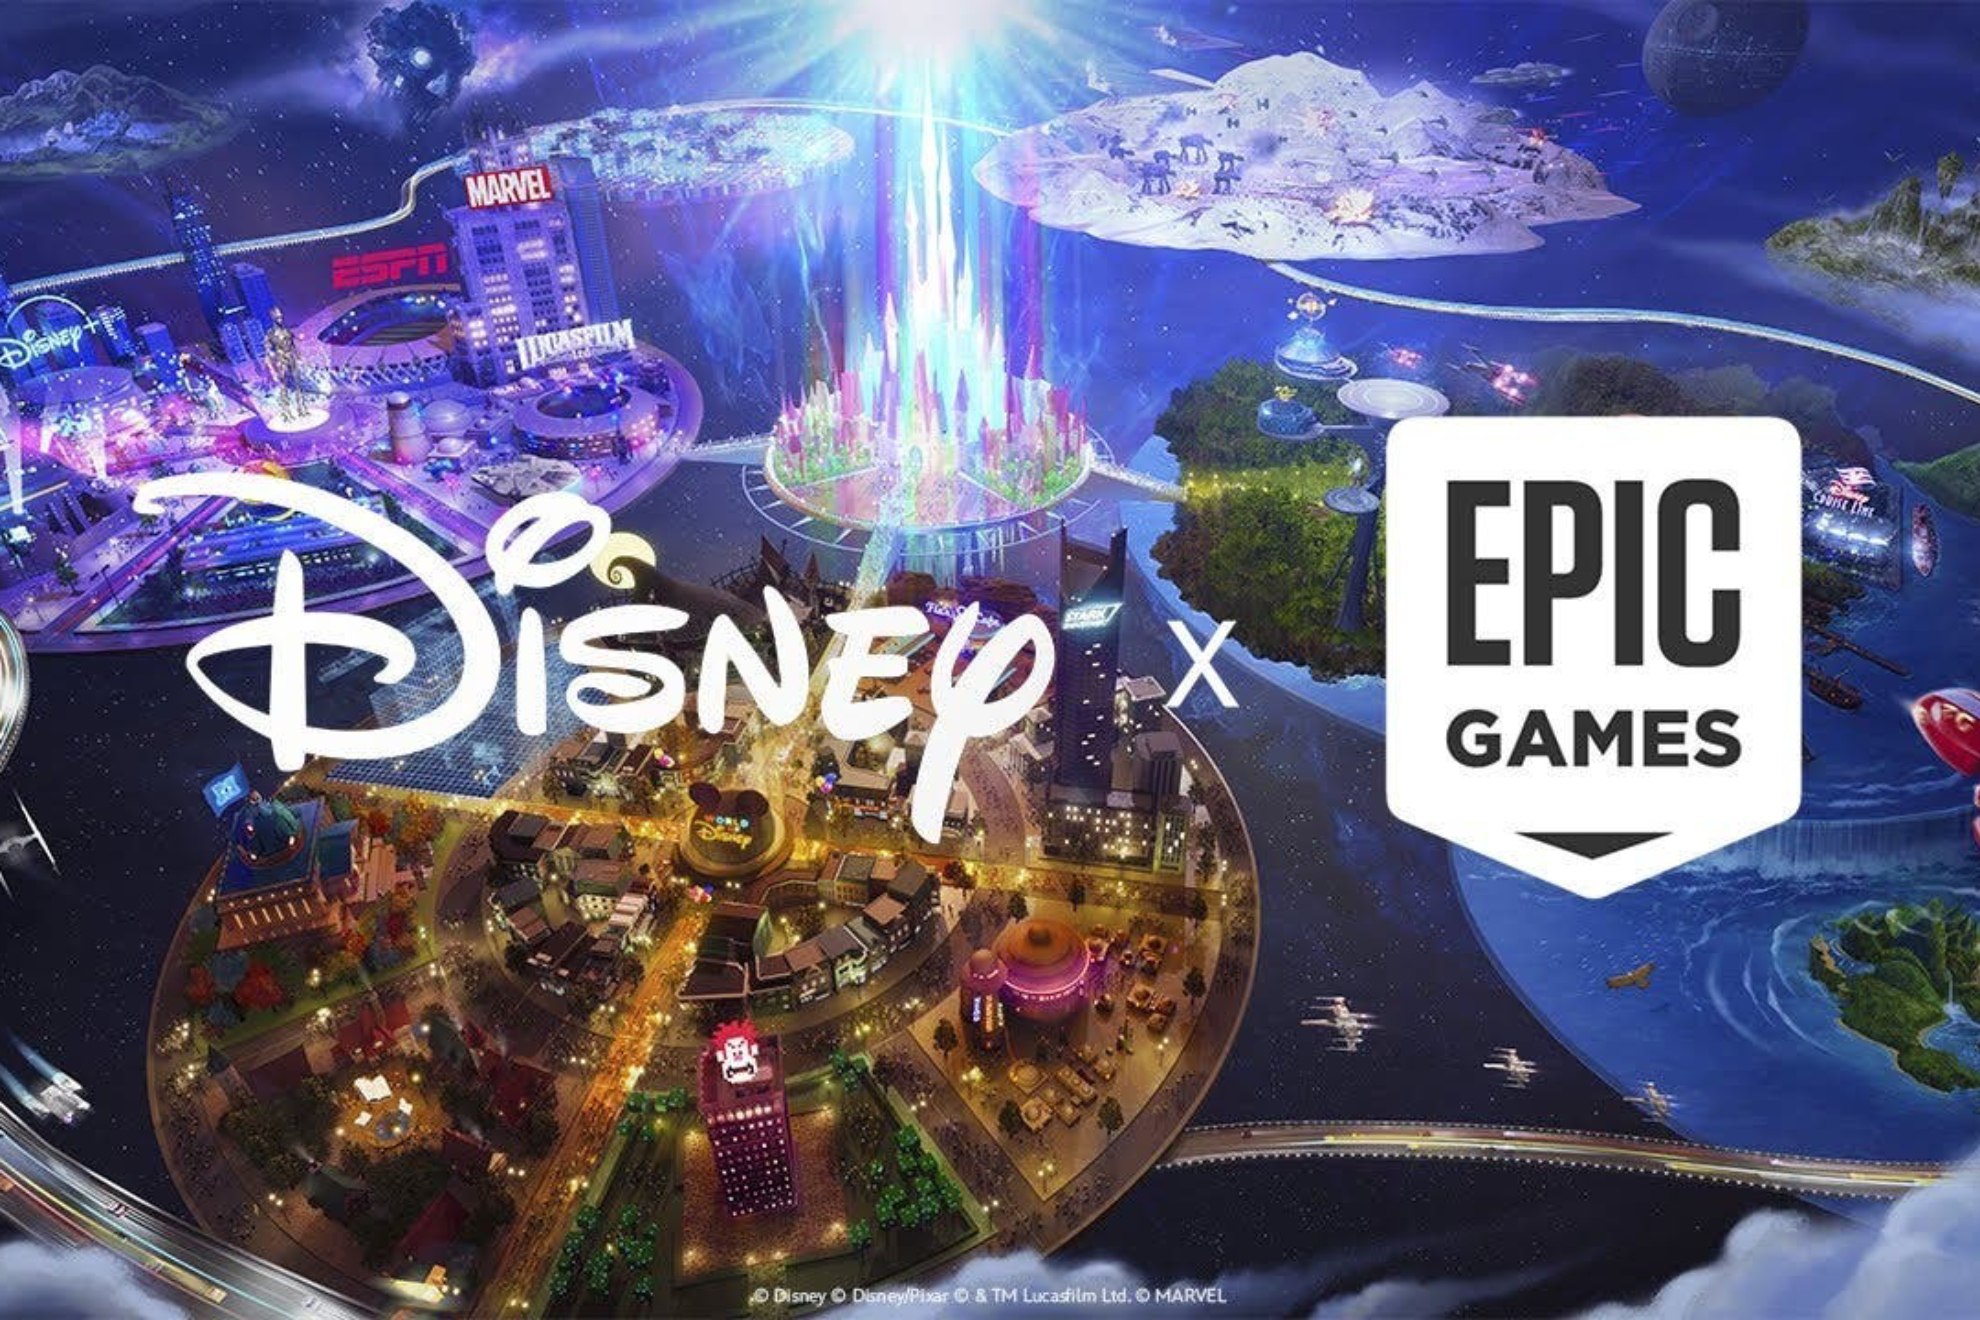 Disney invierte 1500 millones de dlares en Fortnite y Epic Games para crear nuevas experiencias